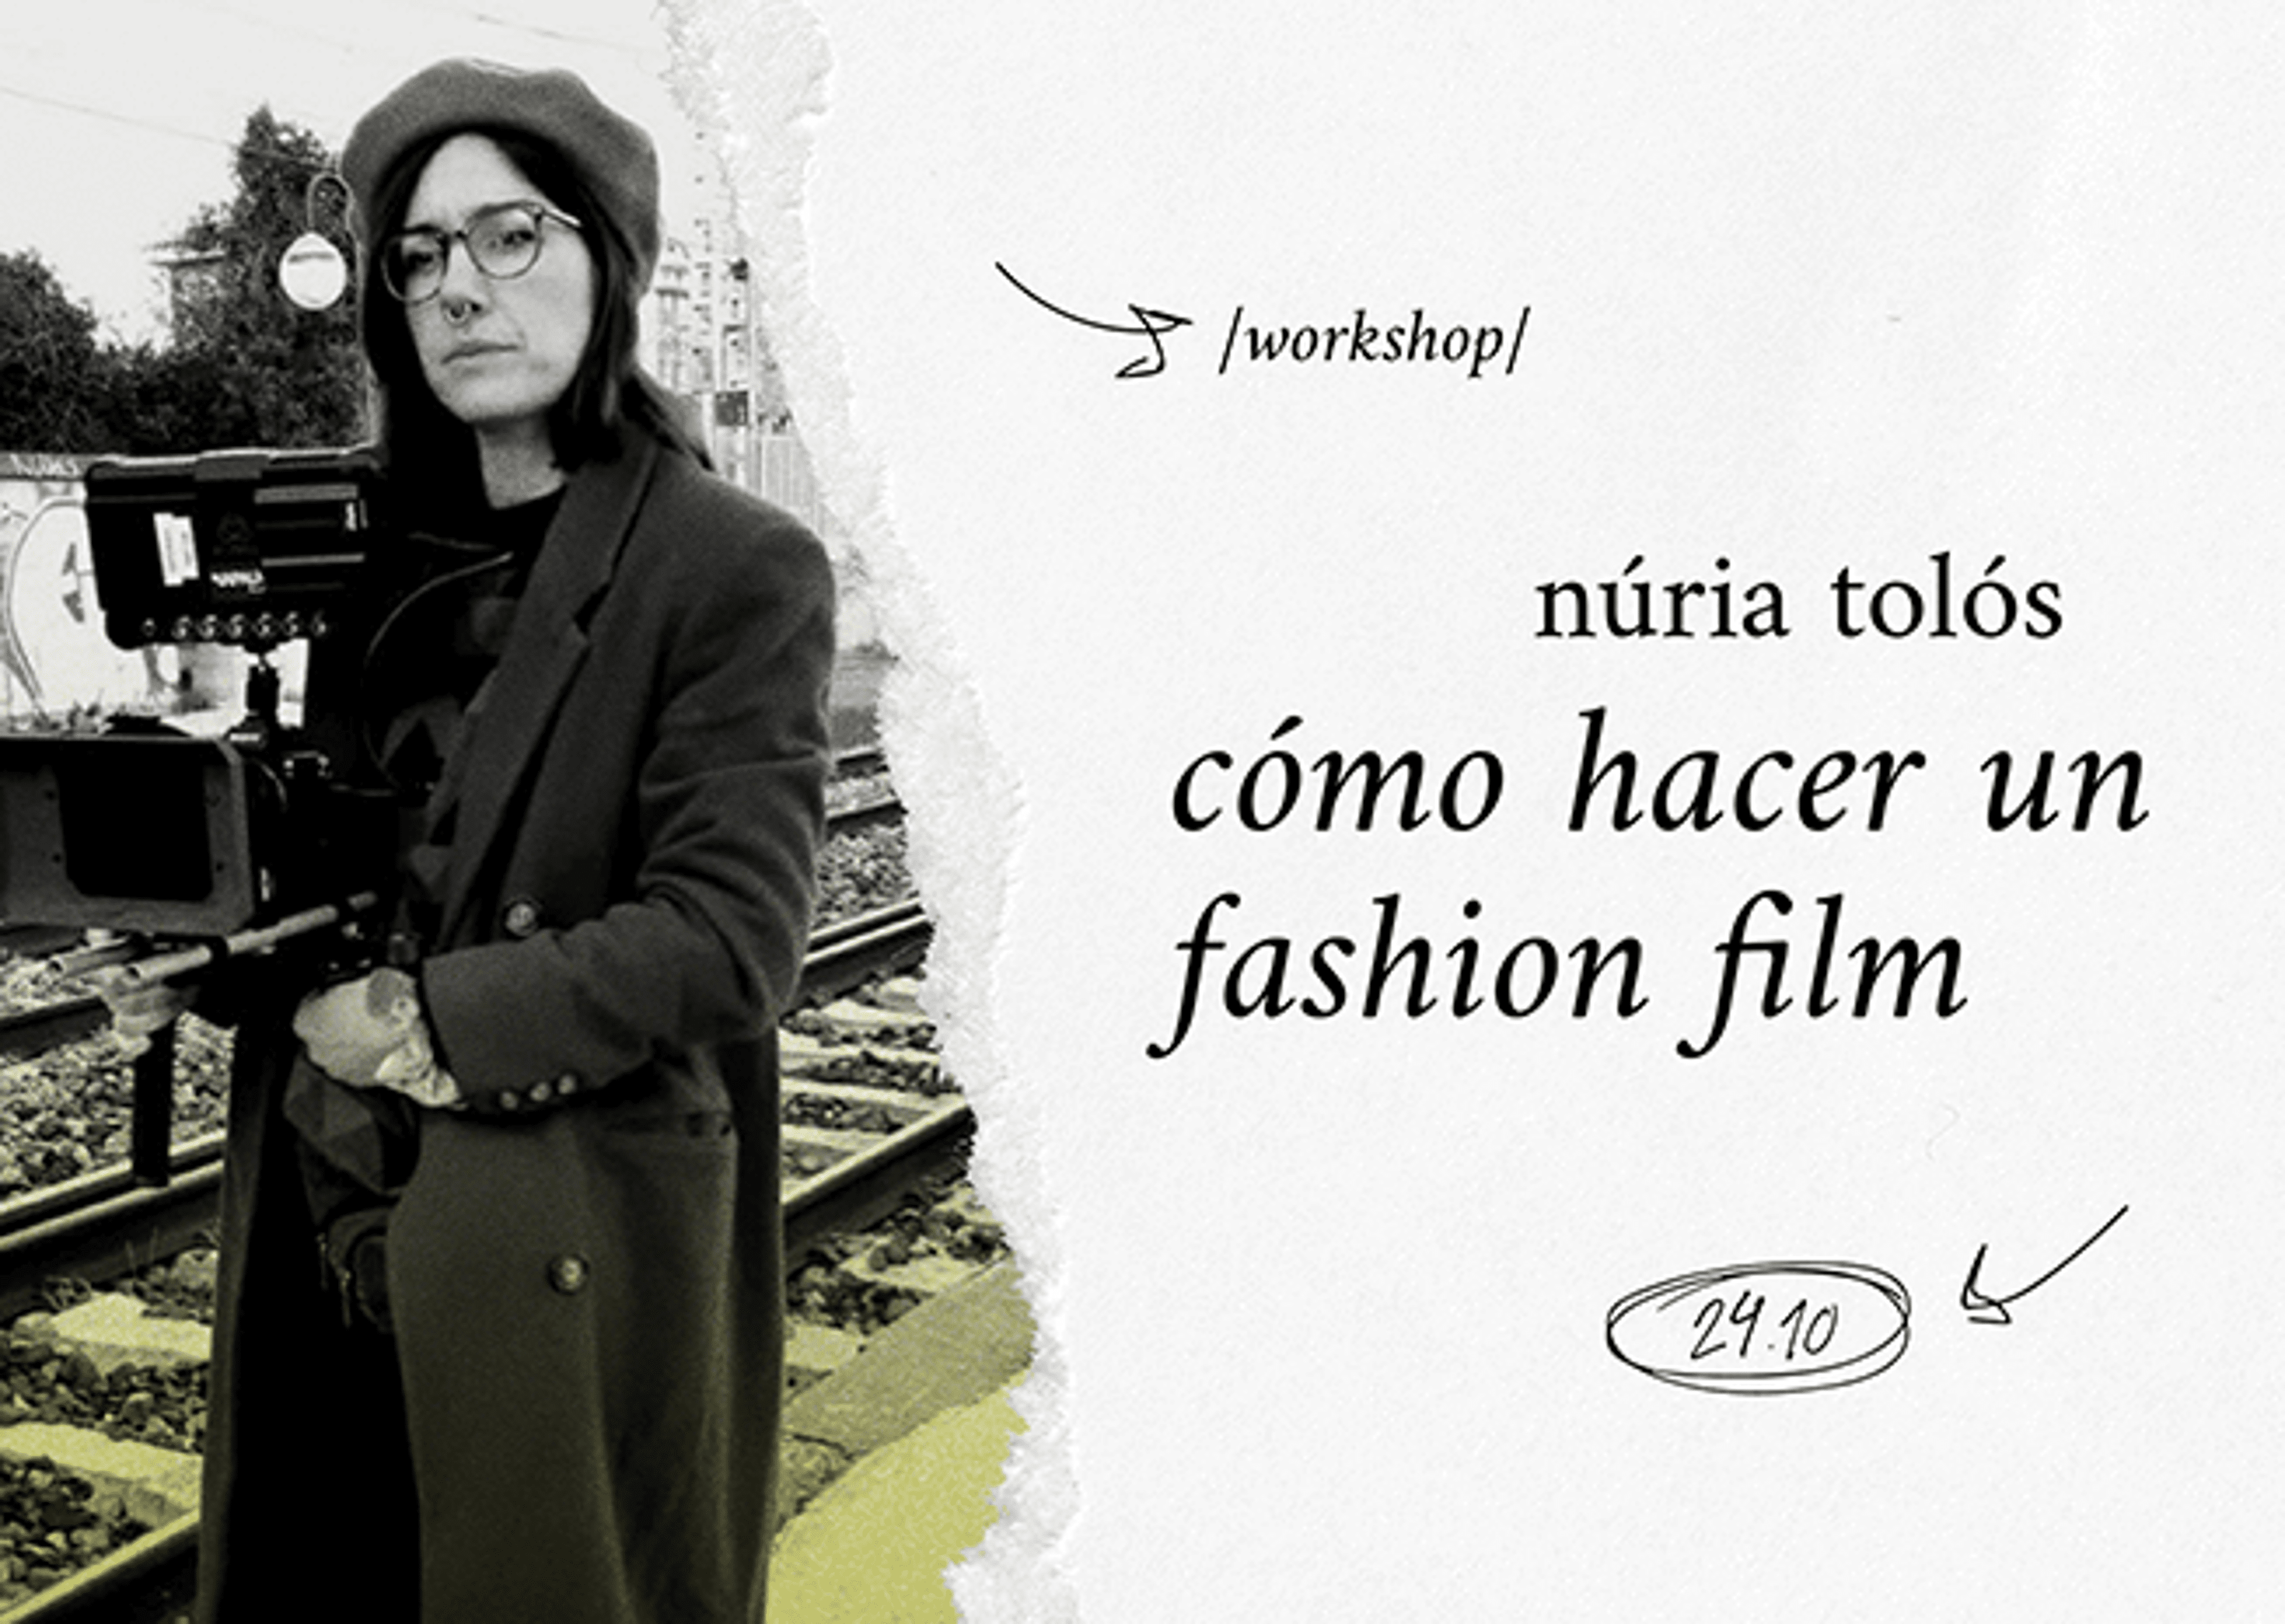 Imagen promocional para un taller titulado 'Cómo hacer un fashion film' con Núria Tolós, programado para el 24 de octubre.